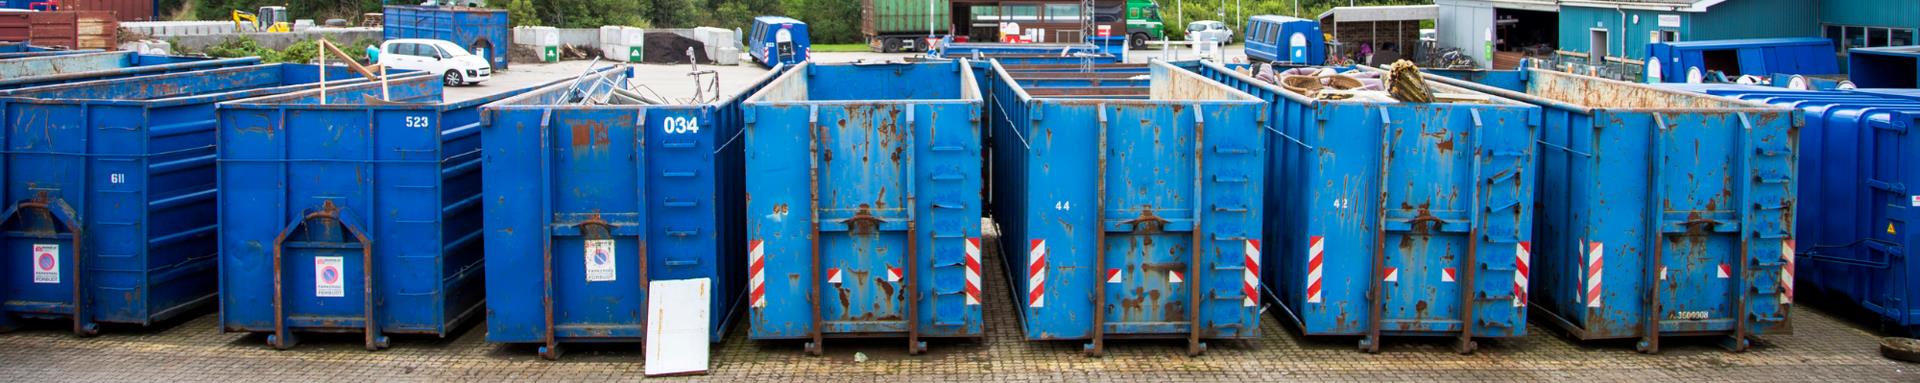 Blå containere fra en genbrugsplads står på række